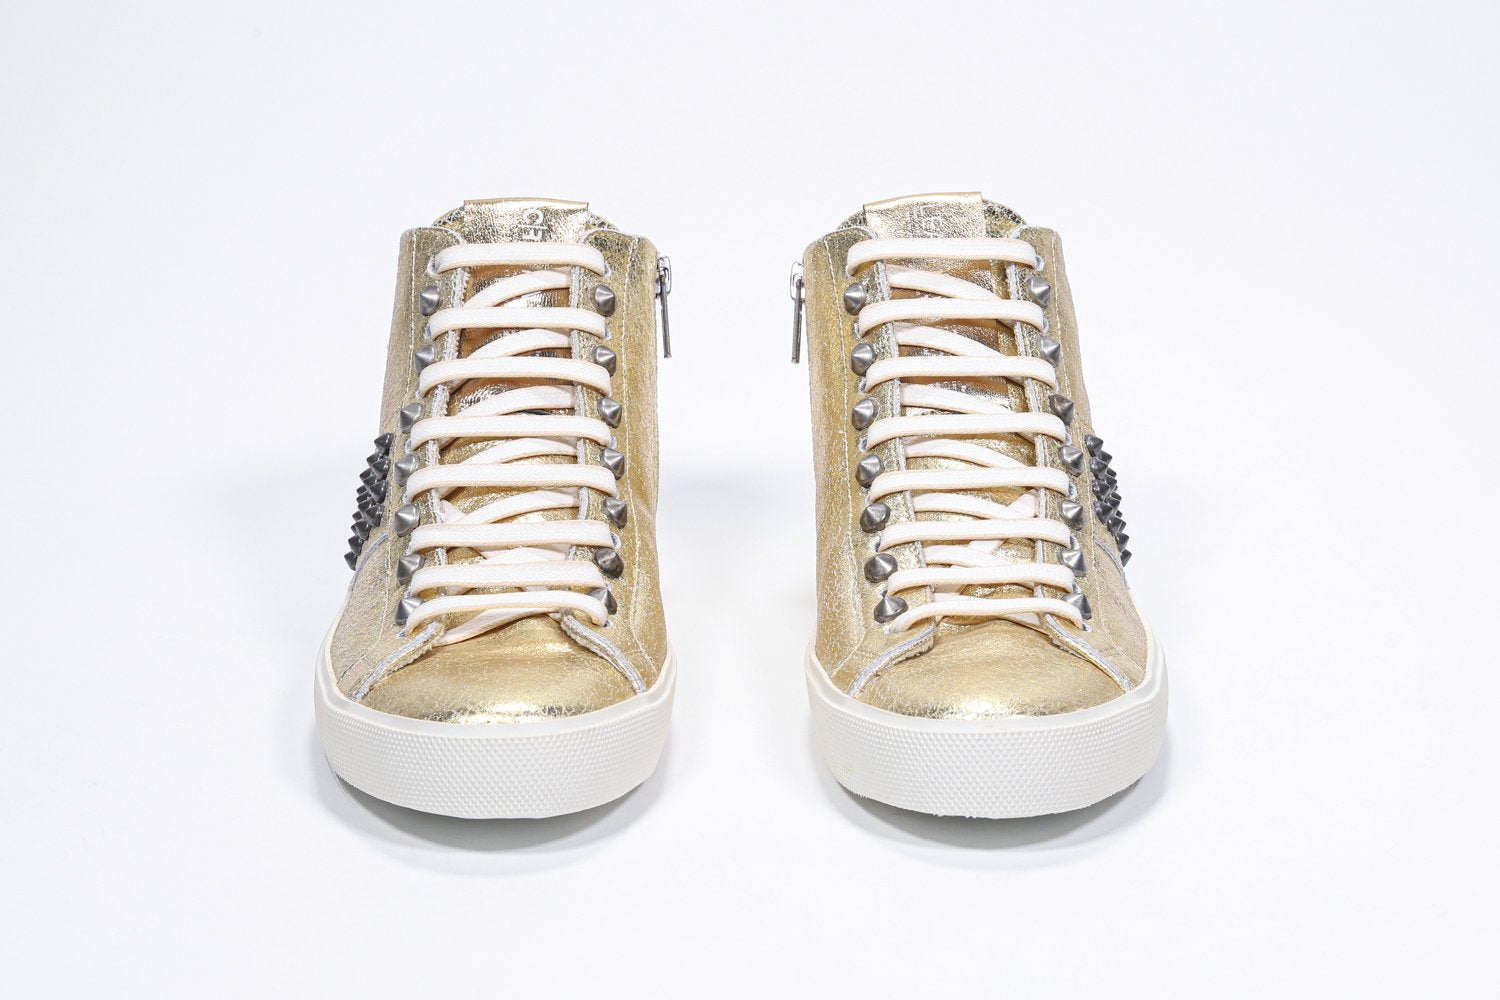 Vista frontale del modello mid top in oro metallizzato sneaker. Tomaia in pelle con borchie, zip interna e suola in gomma vintage.